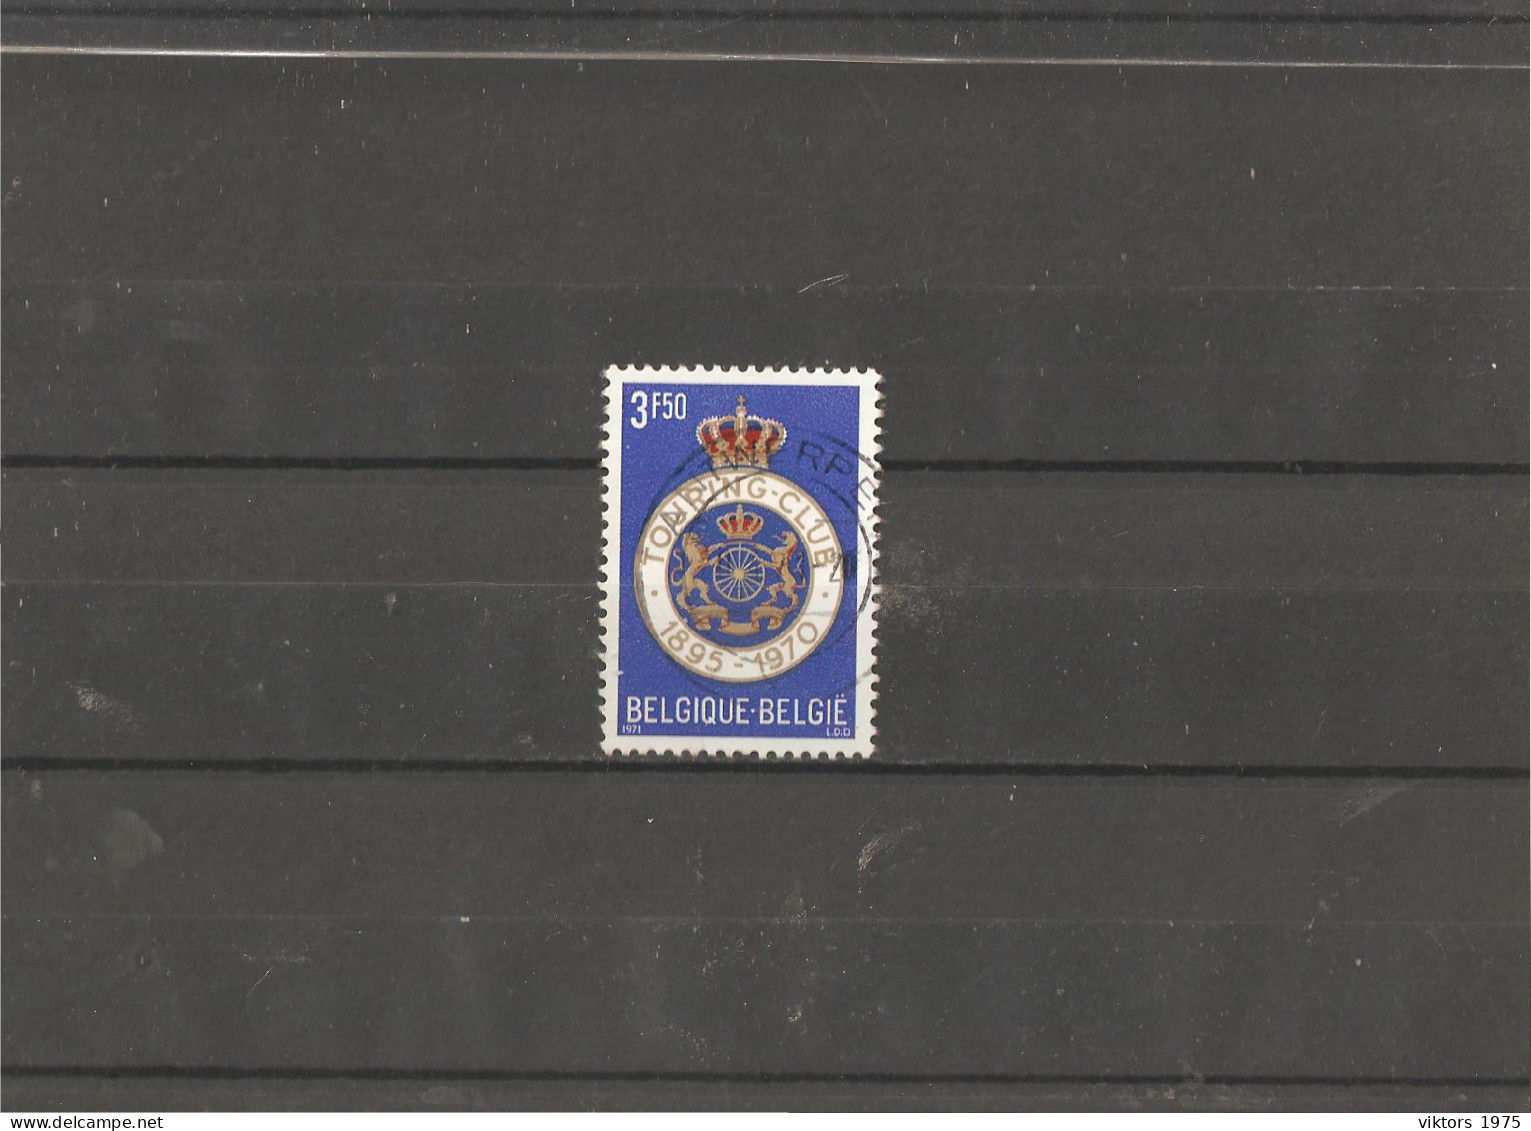 Used Stamp Nr.1626 In MICHEL Catalog - Gebruikt